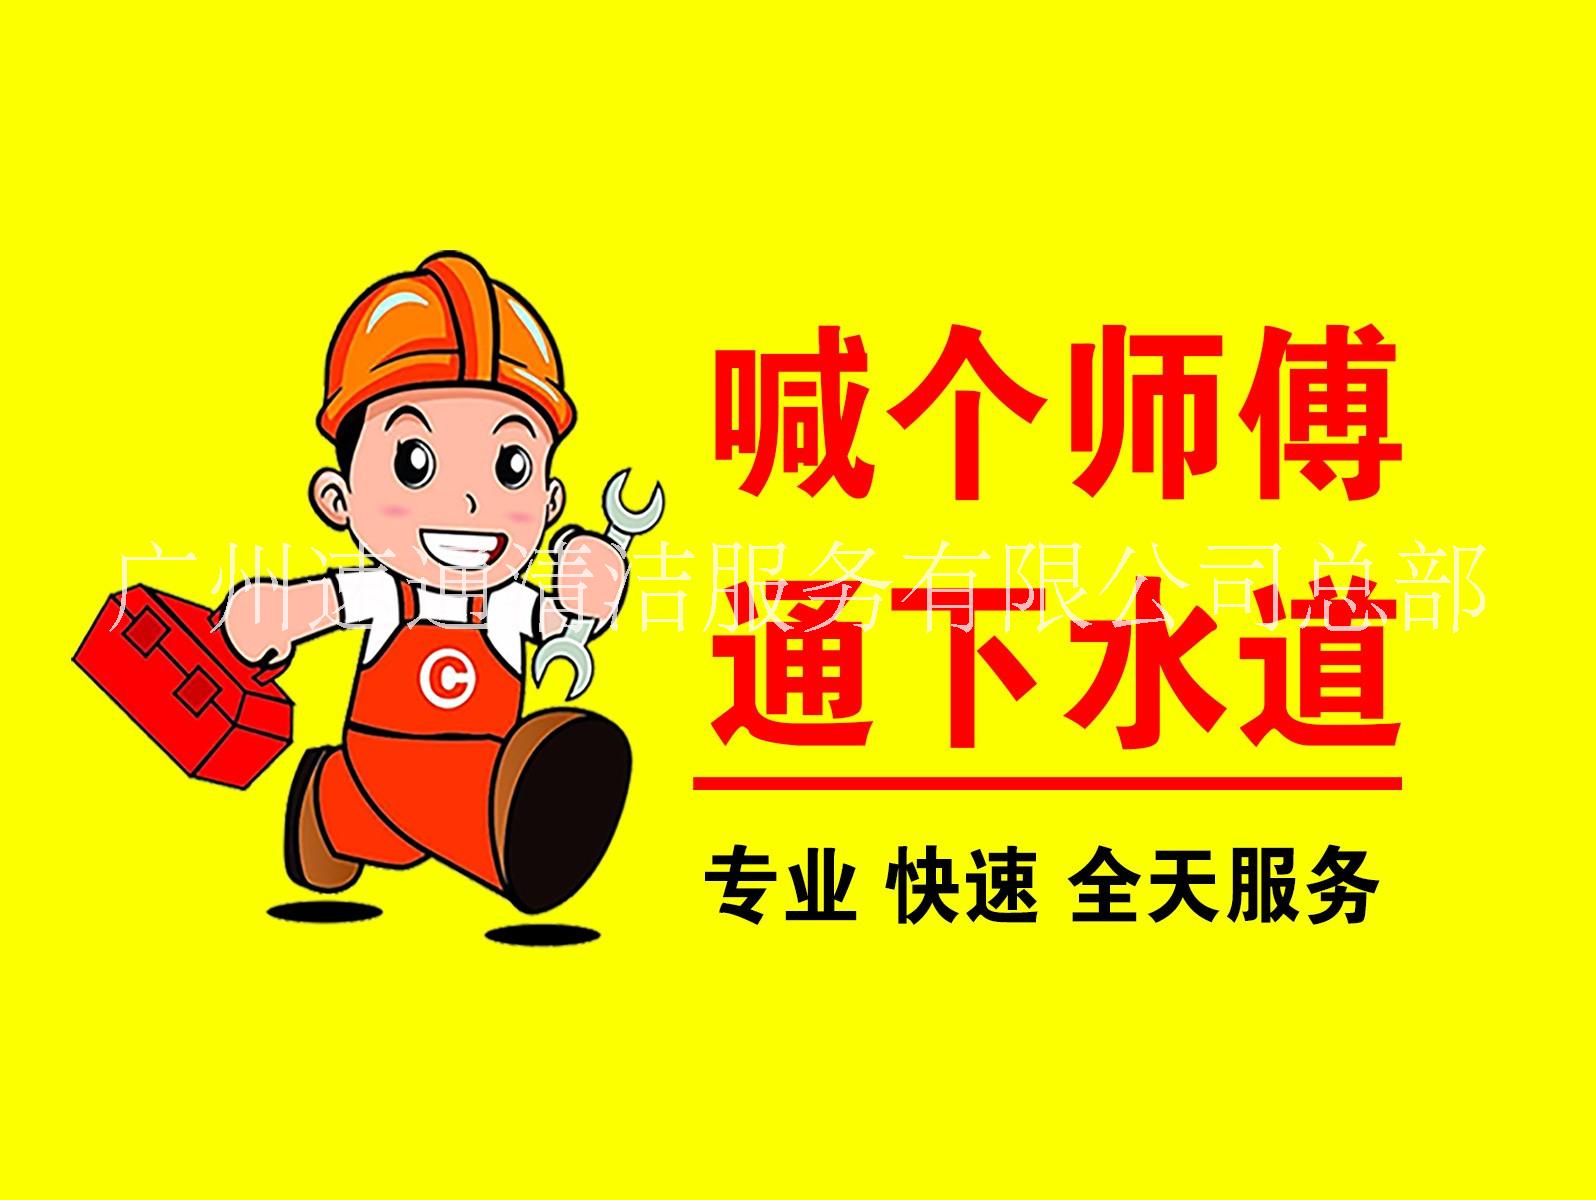 （真不错） 广州市政管道疏通服务中心 管道疏通公司联系电话-广州速通清洁服务有限公司